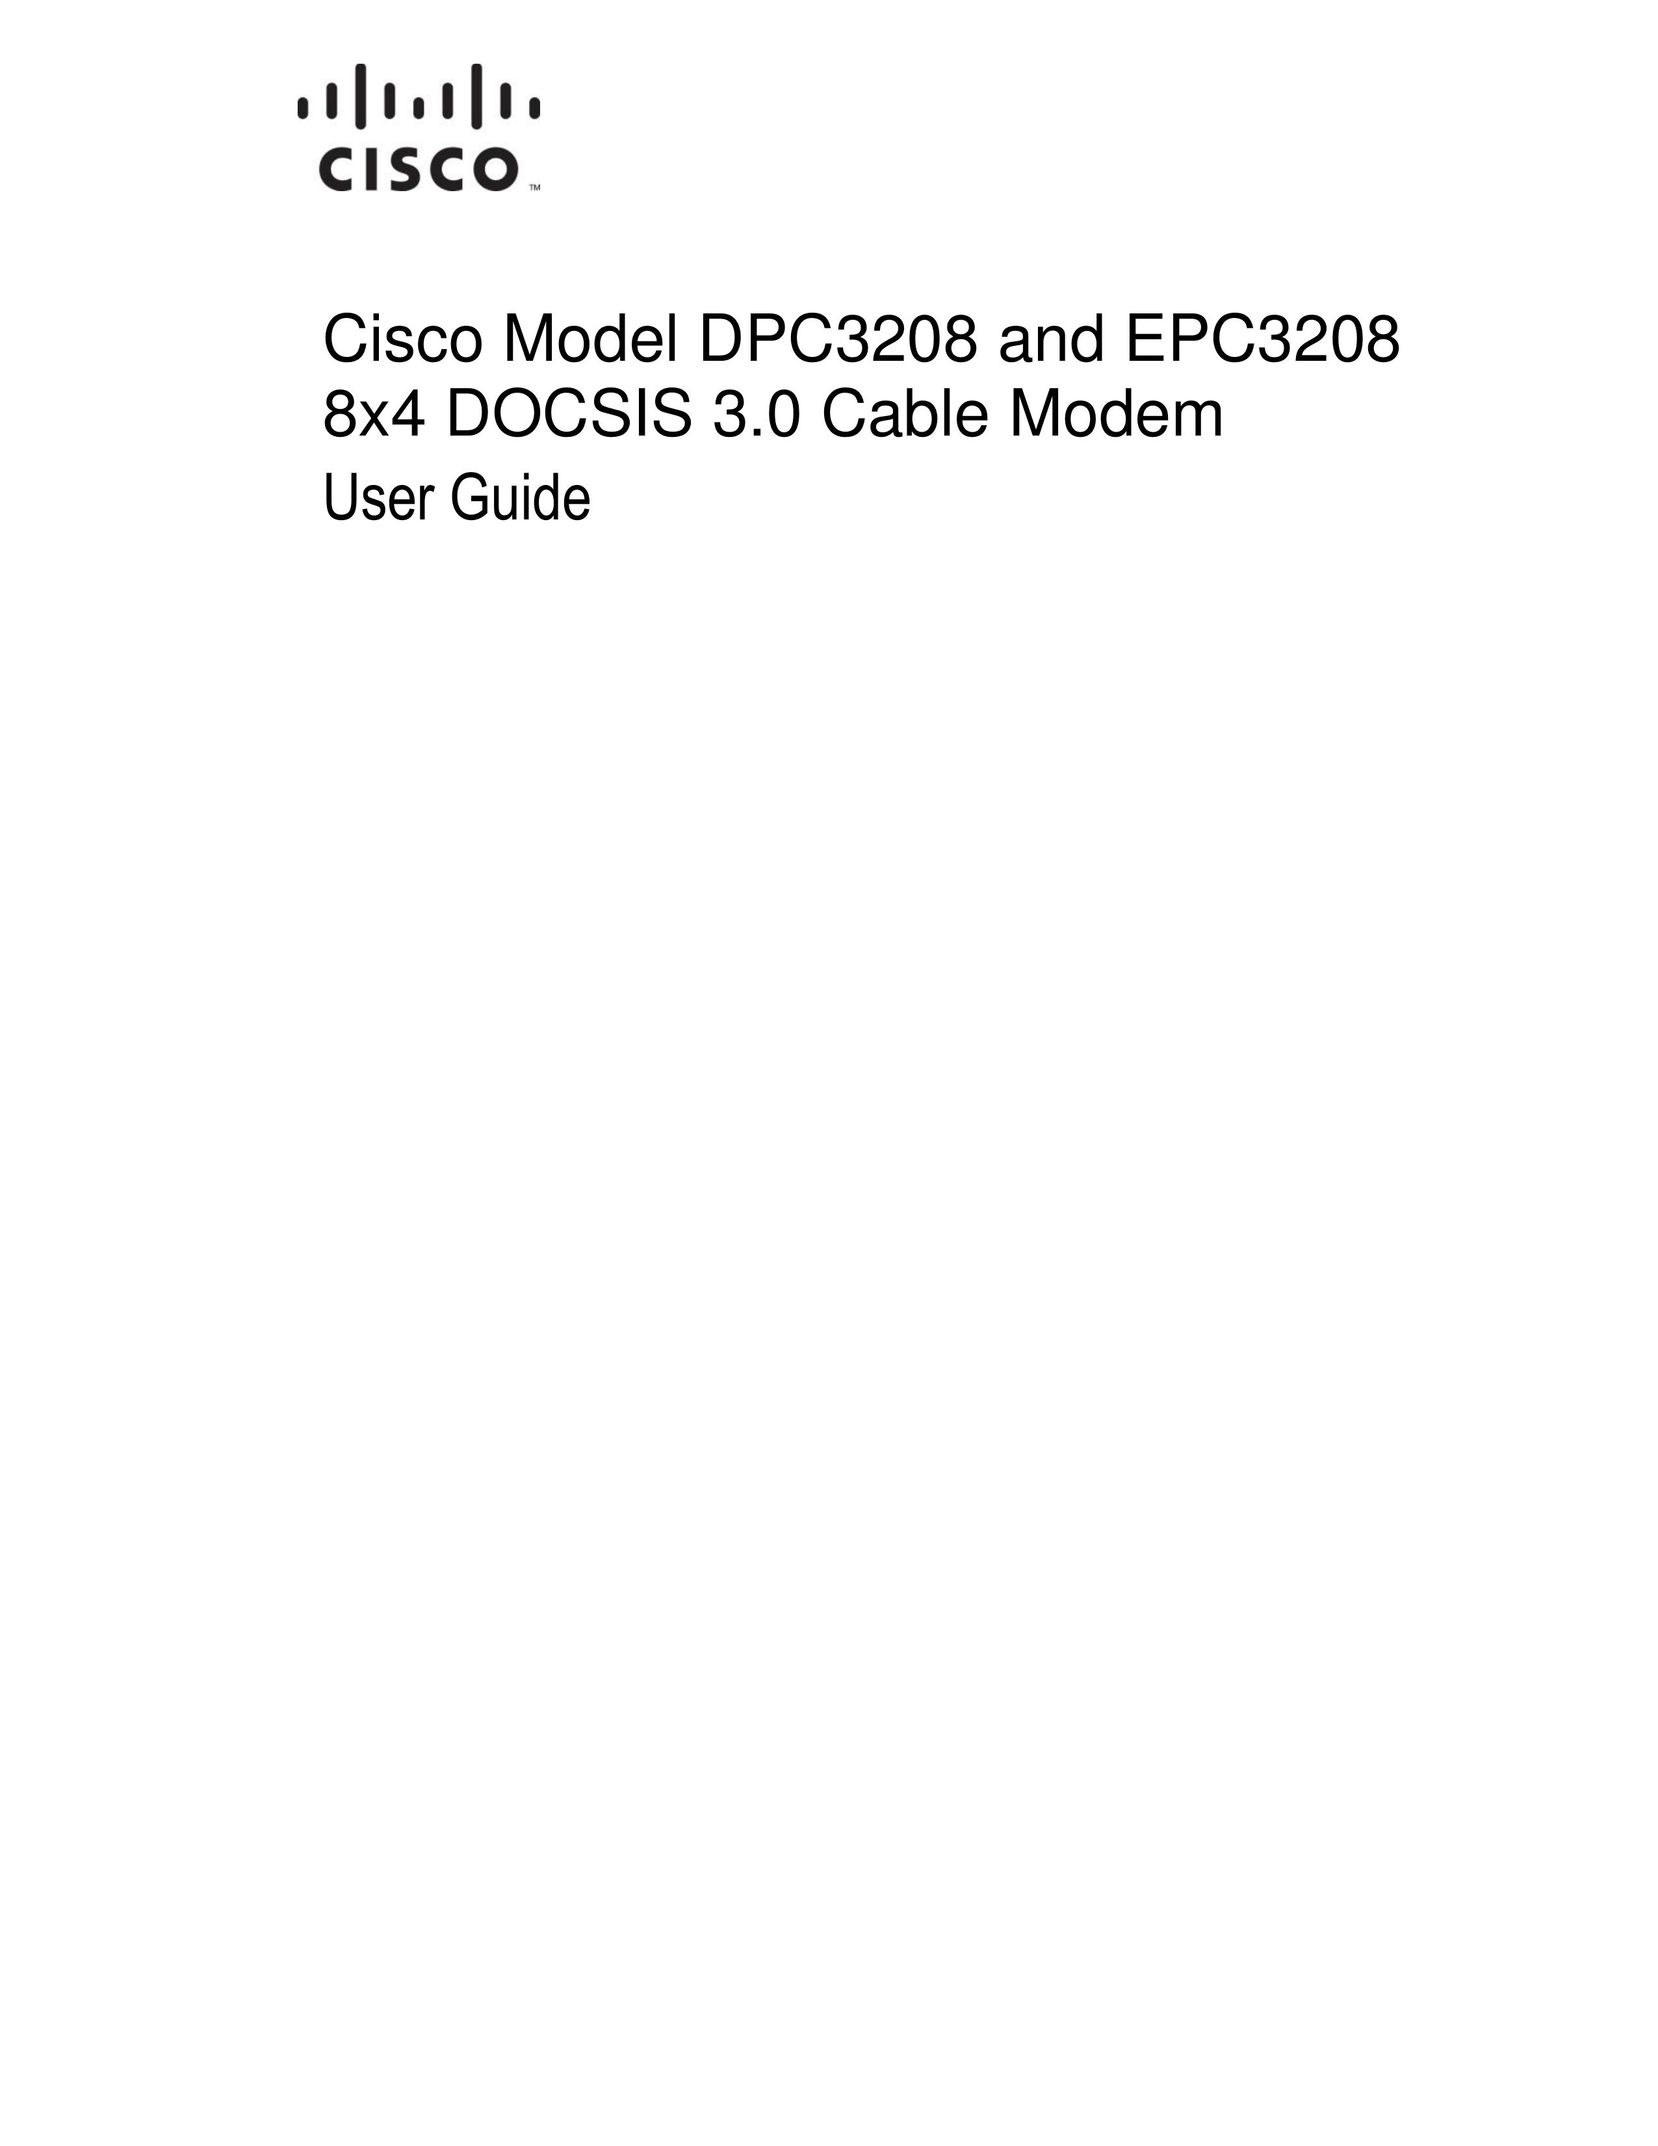 Cisco Systems EPC3208 Modem User Manual